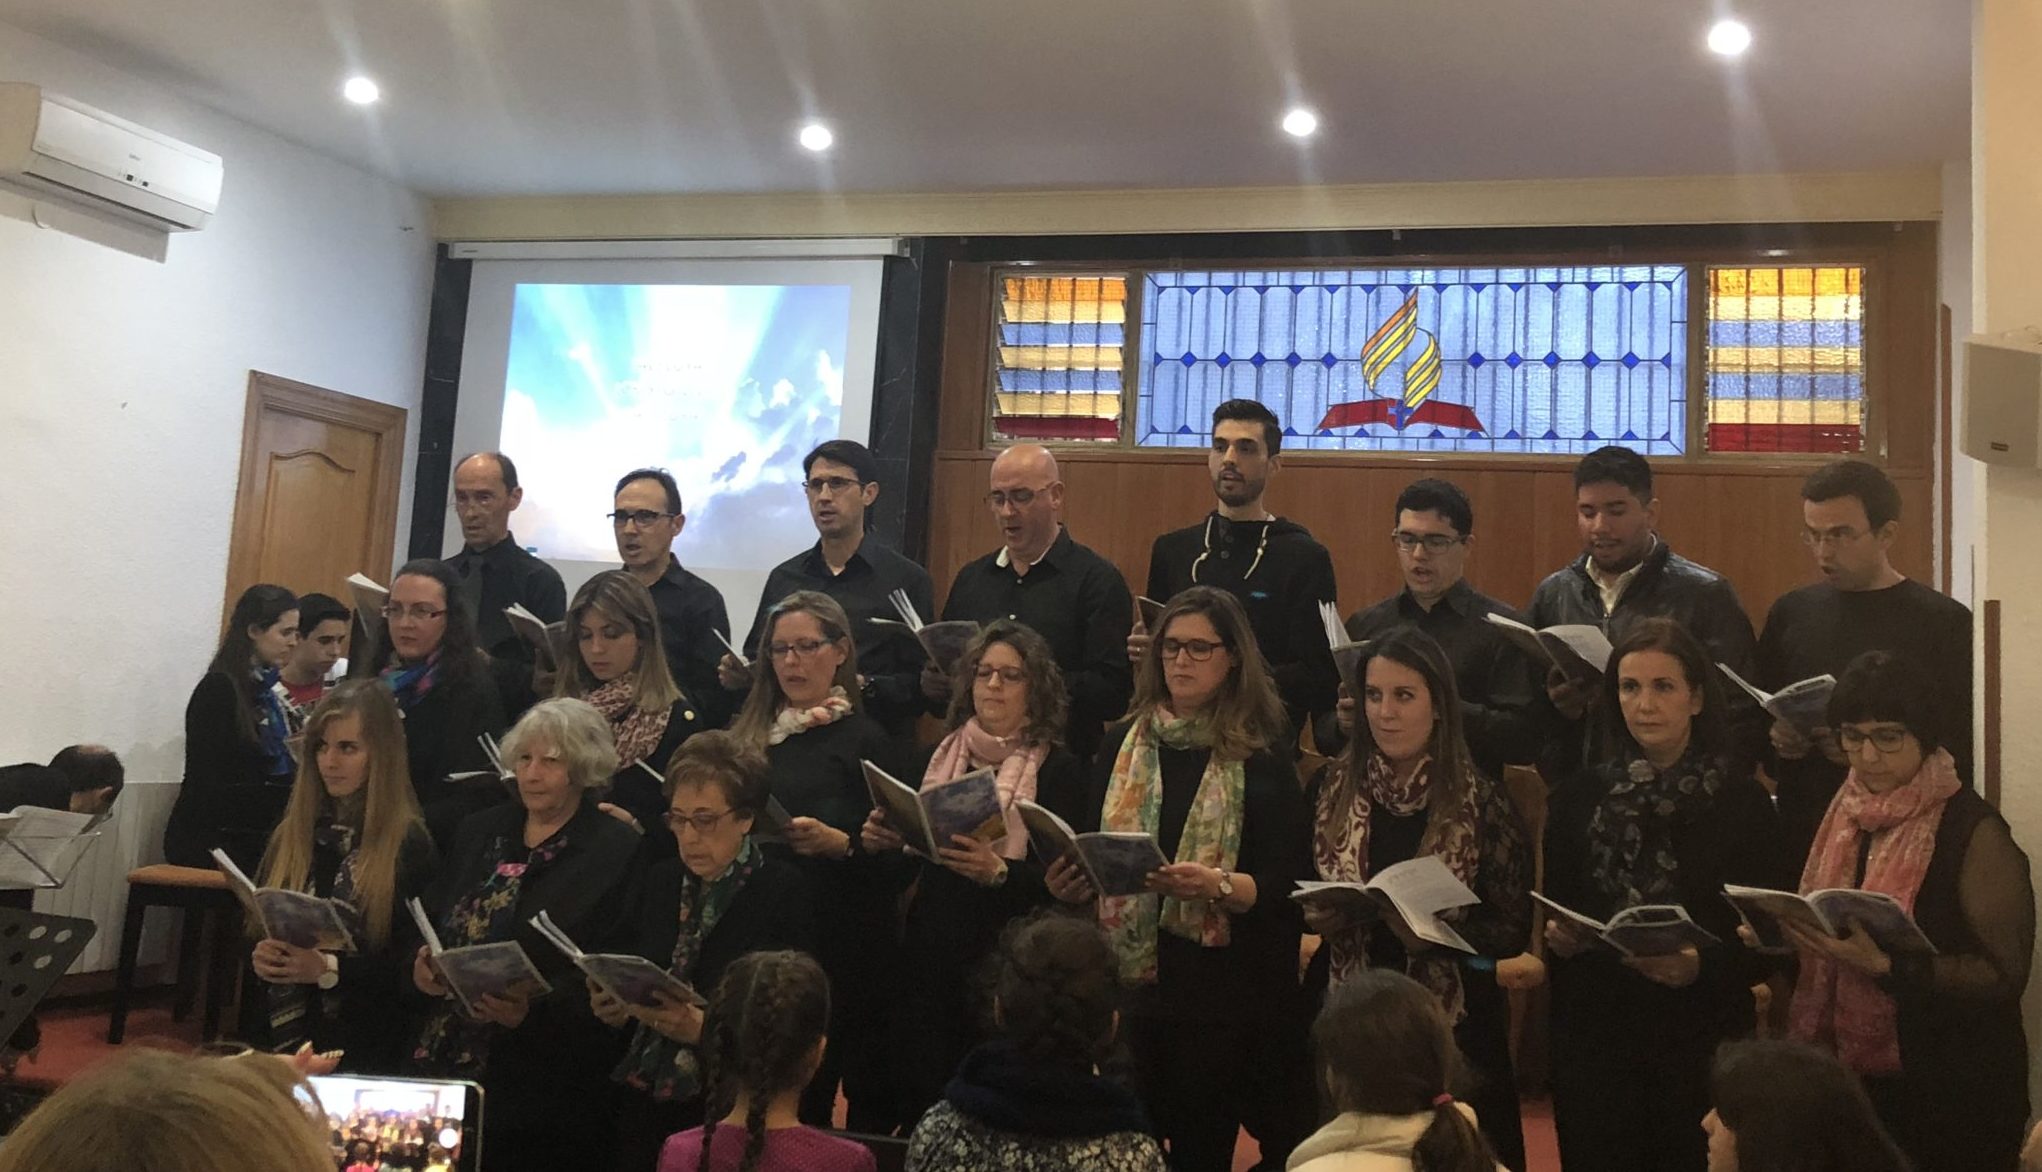 Coro iglesia de Jaén visita a la iglesia de Málaga